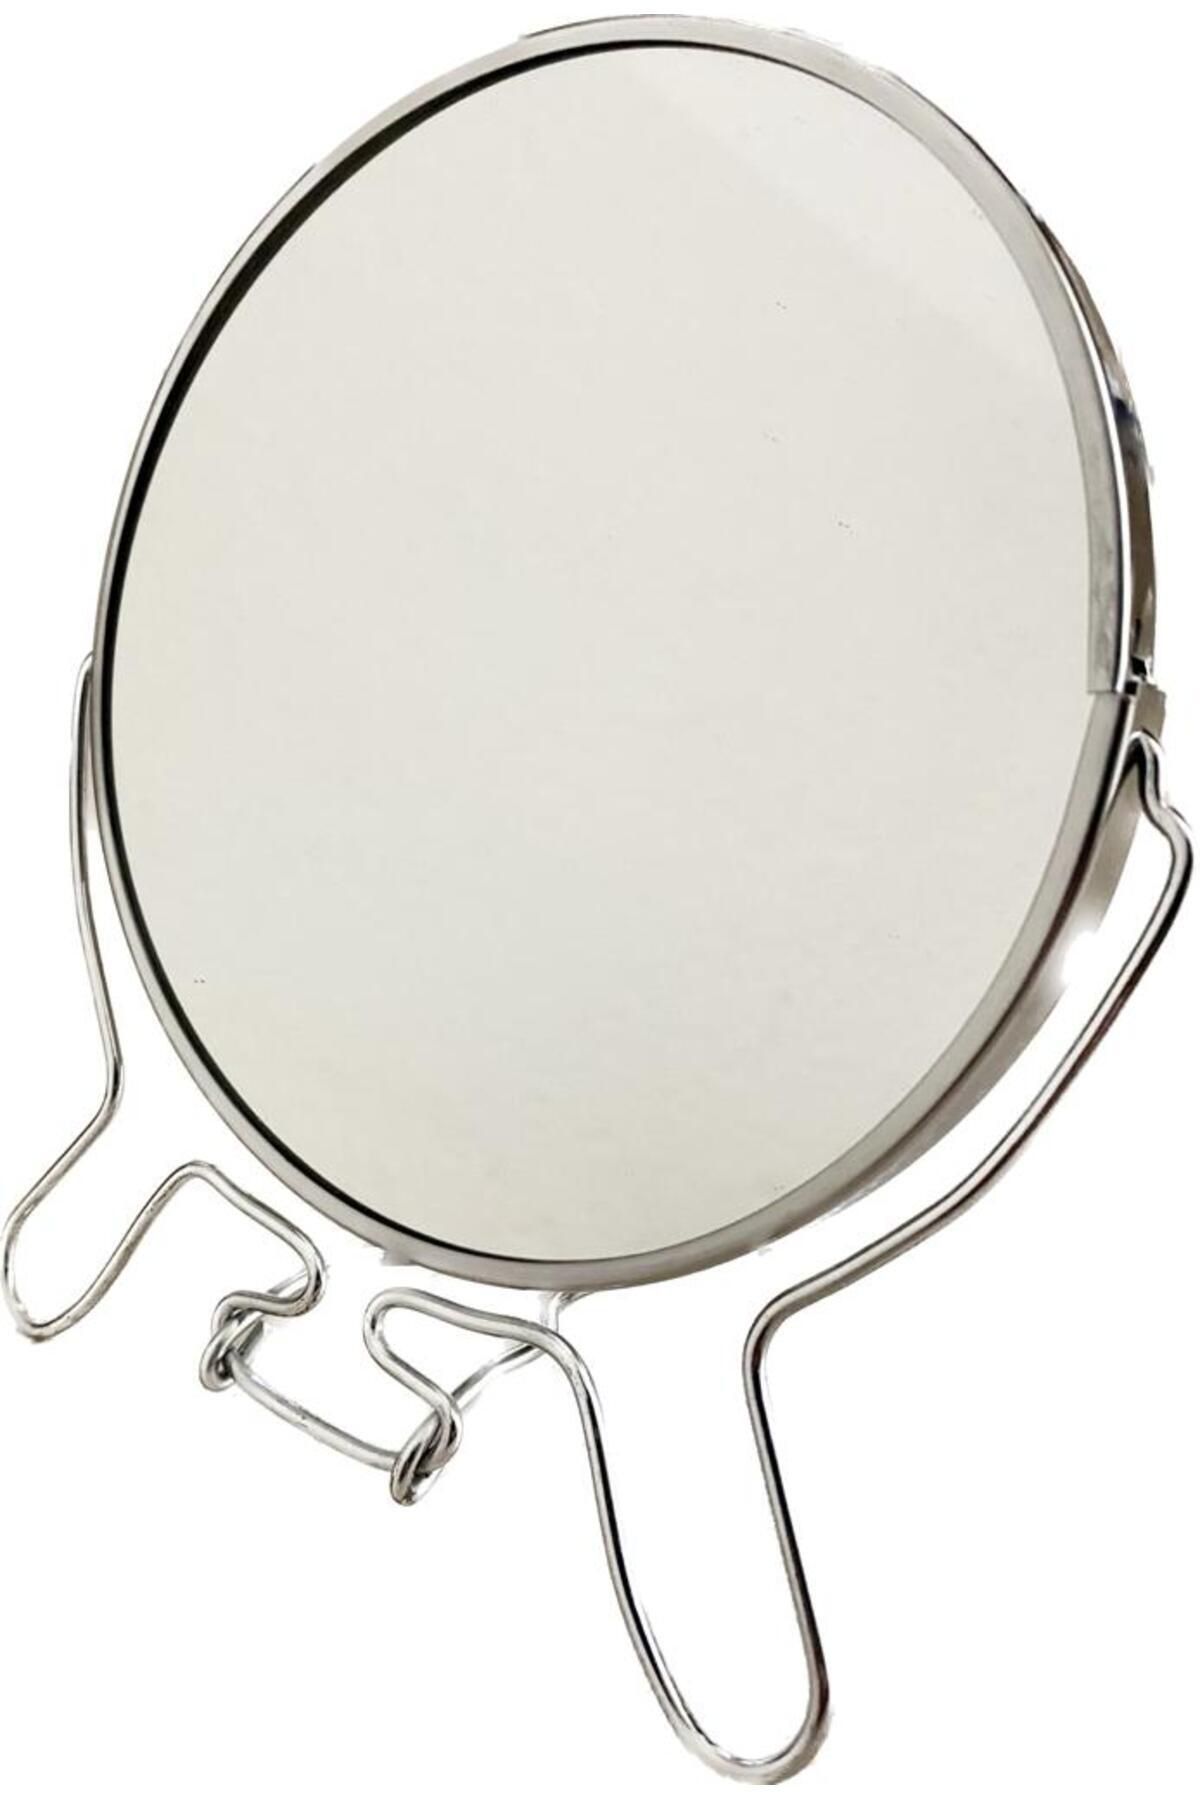 kukohomes Çiftt Taraflı Büyüteçli 5 “ Makyaj Aynası Masa Üstü Aynası